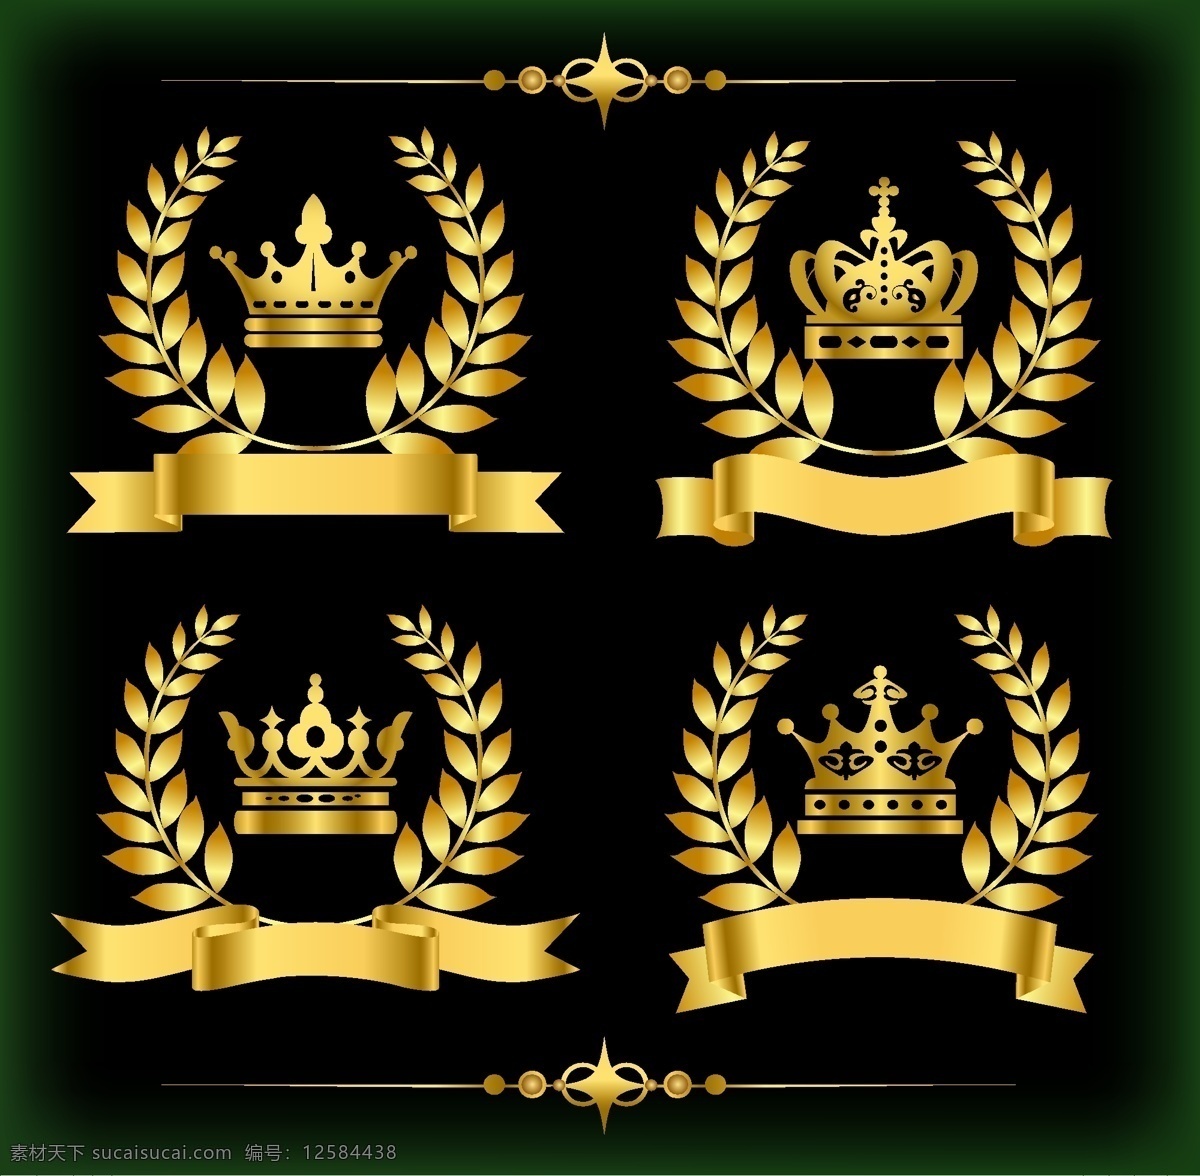 欧式 经典 皇冠 标致 网页设计 标签 金色 矢量素材 设计素材